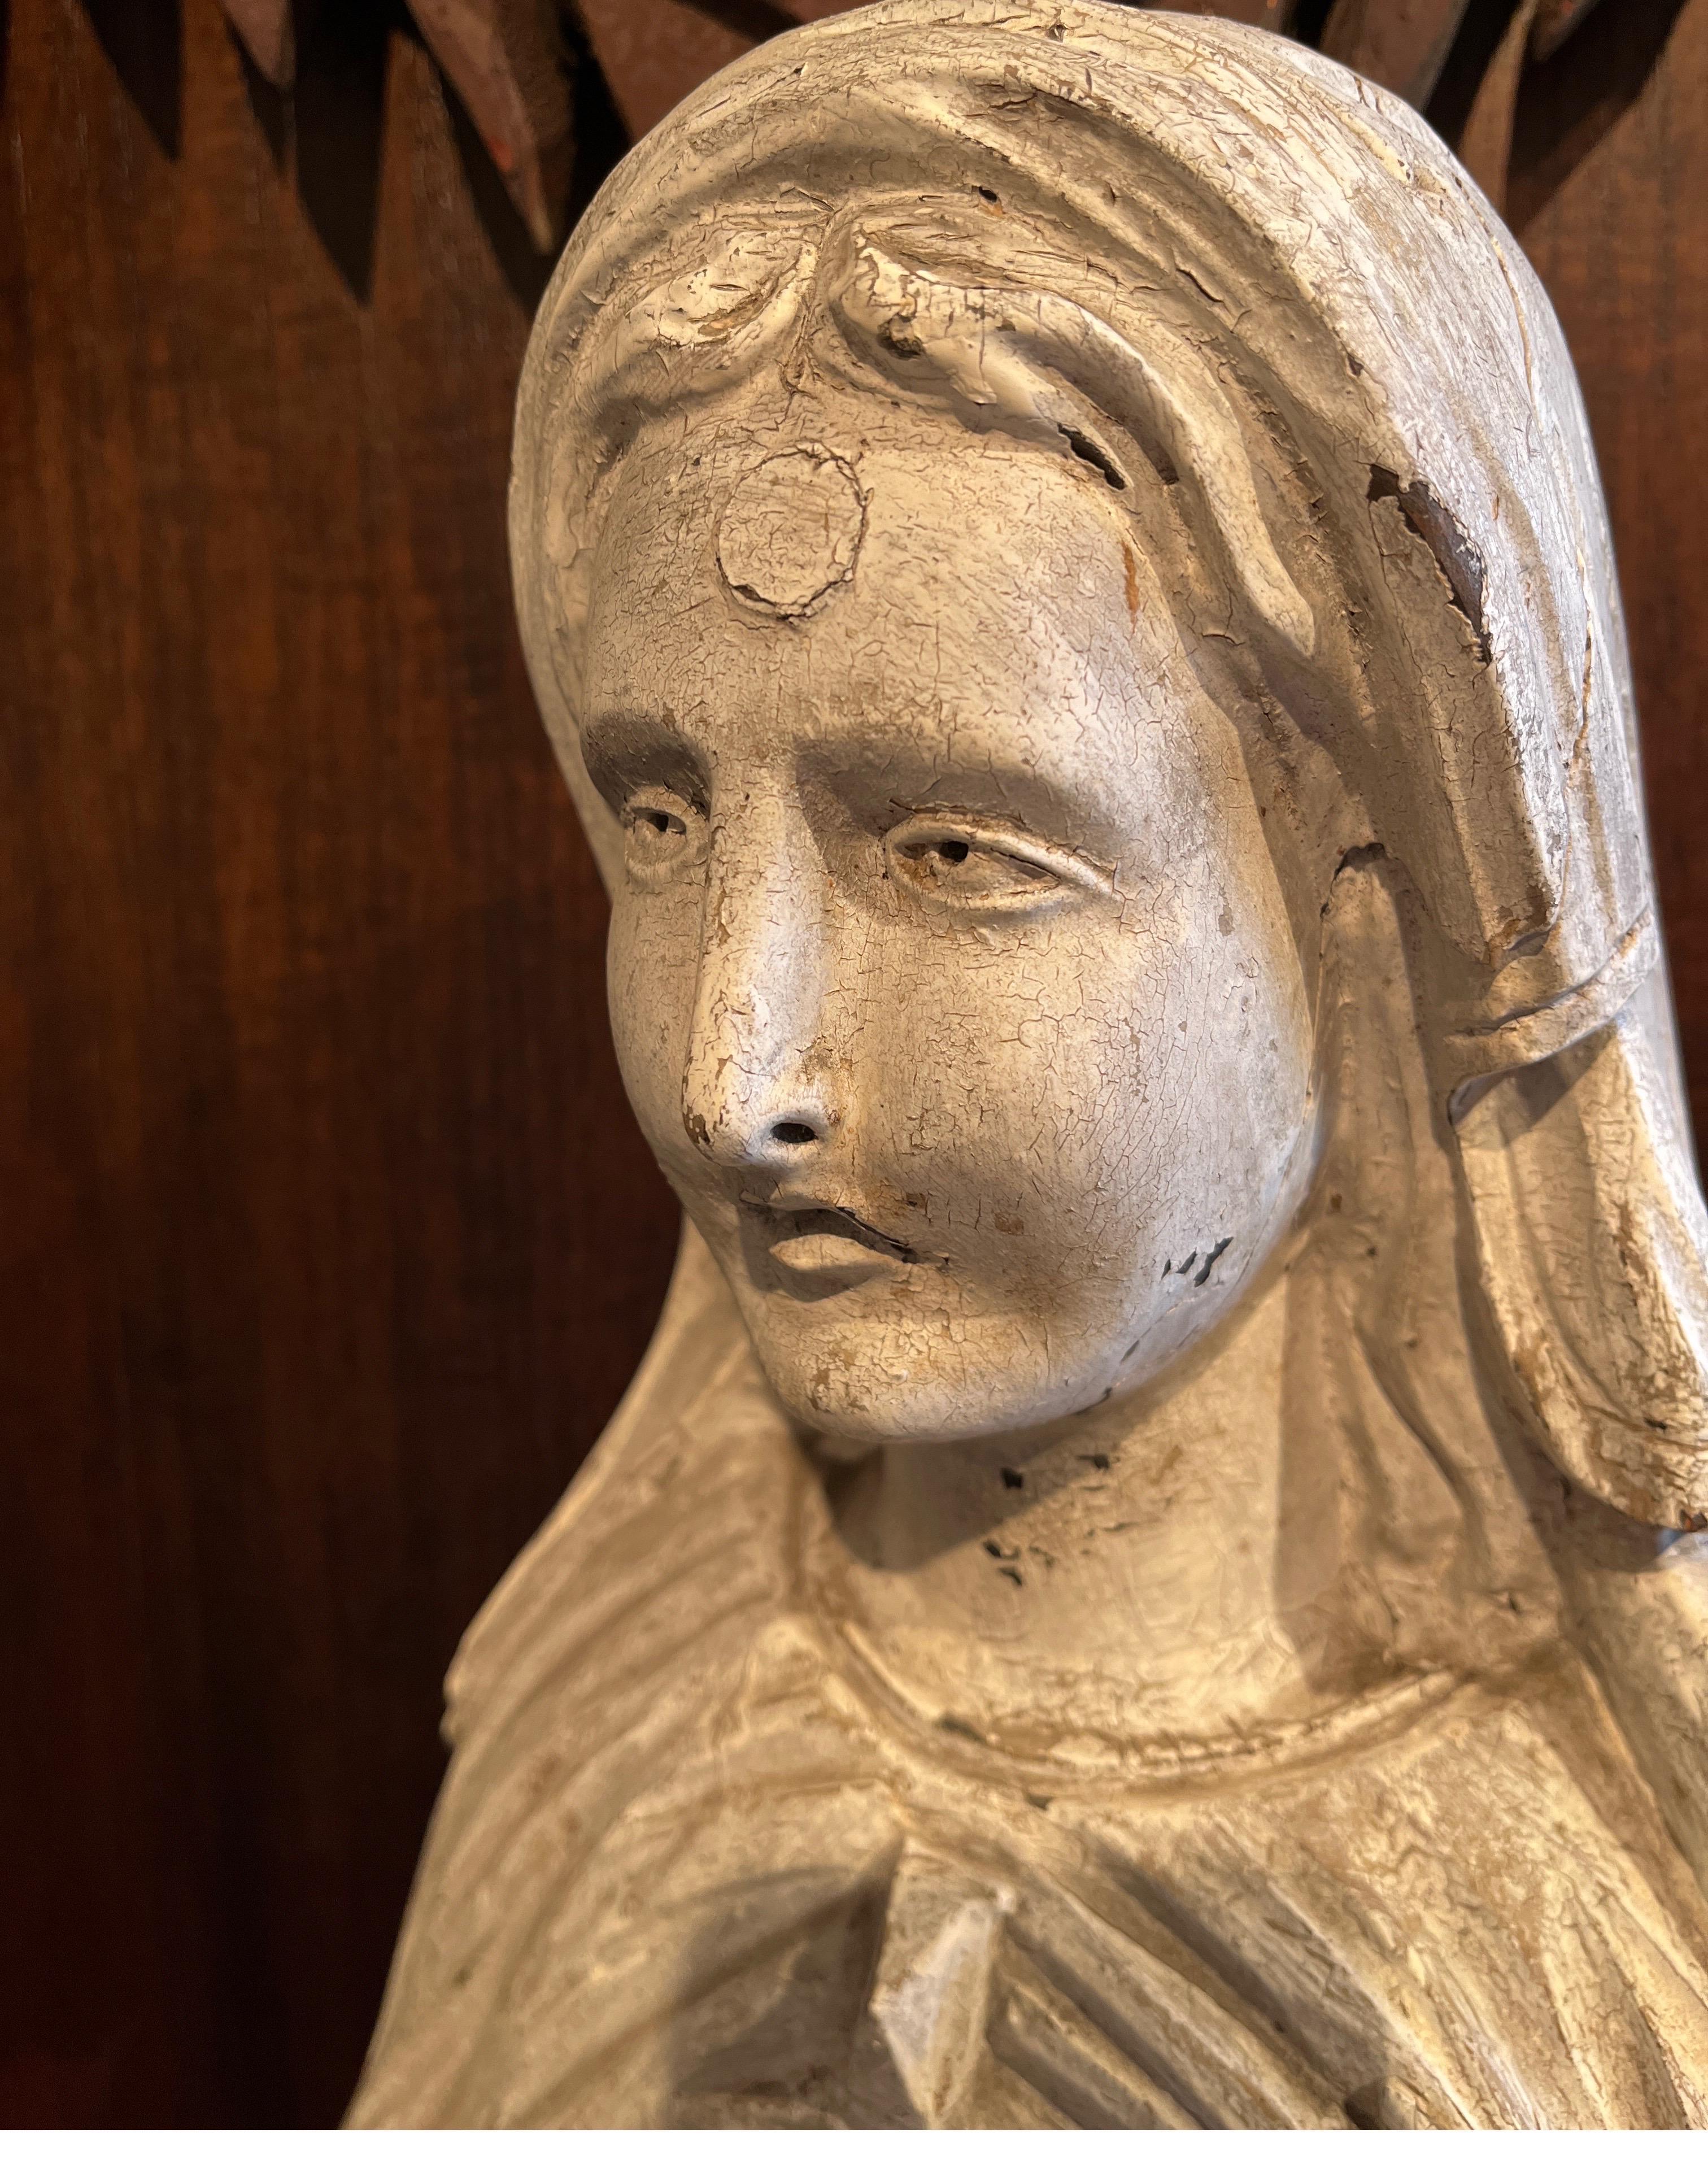 Eine große, feinfühlig geschnitzte antike Holzfigur der Madonna.  Das fast einen Meter hohe, kunstvoll geschnitzte Gesicht Marias, umgeben von anmutig fließenden Gewändern und einer Kopfbedeckung, vermittelt ein fast unbeschreibliches Gefühl von